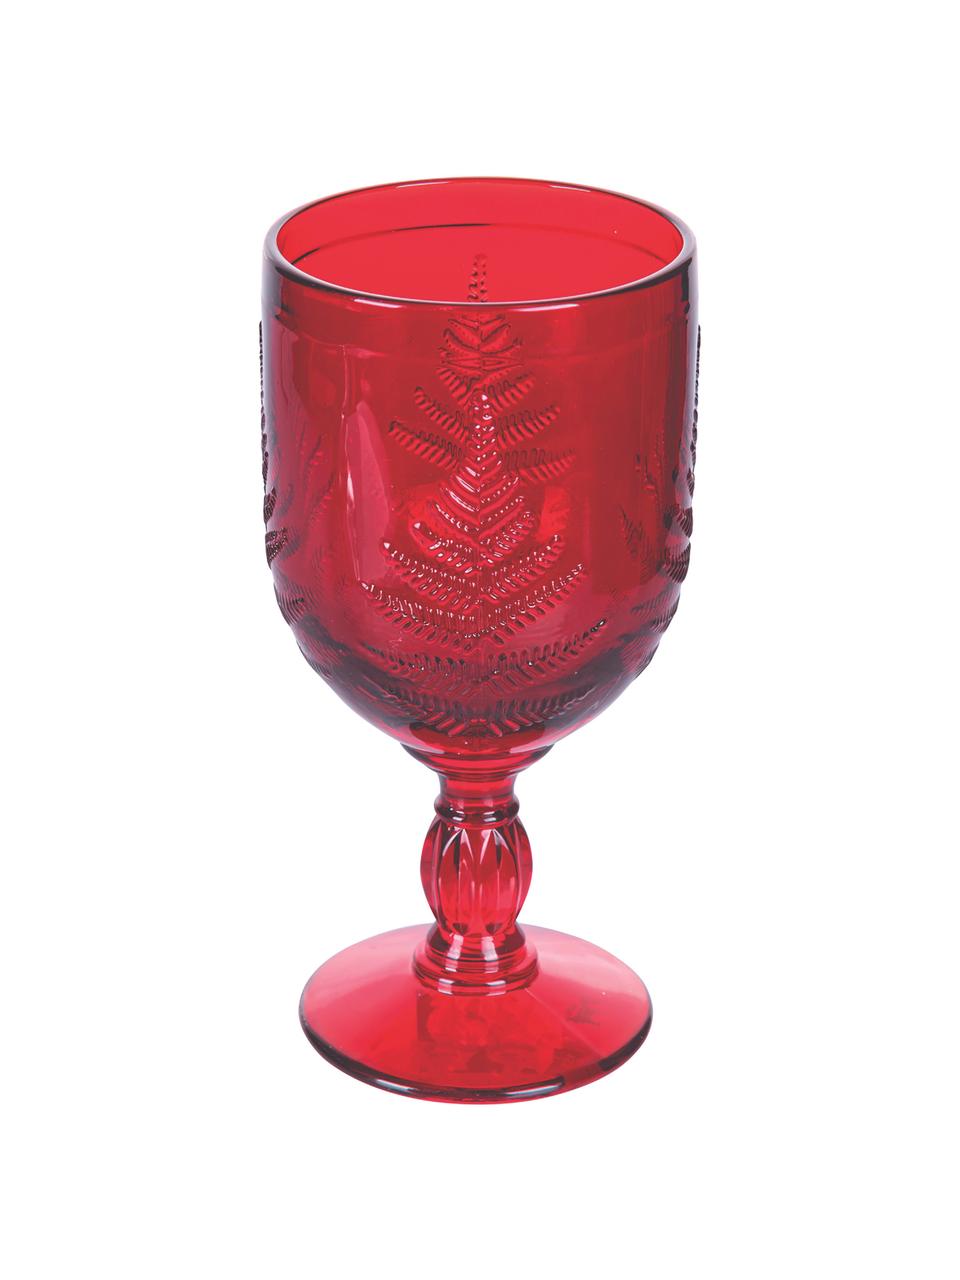 Copas de vino con relieves navideños Aspen, 6 uds., Vidrio, Rojo, Ø 8 x Al 17 cm, 240 ml